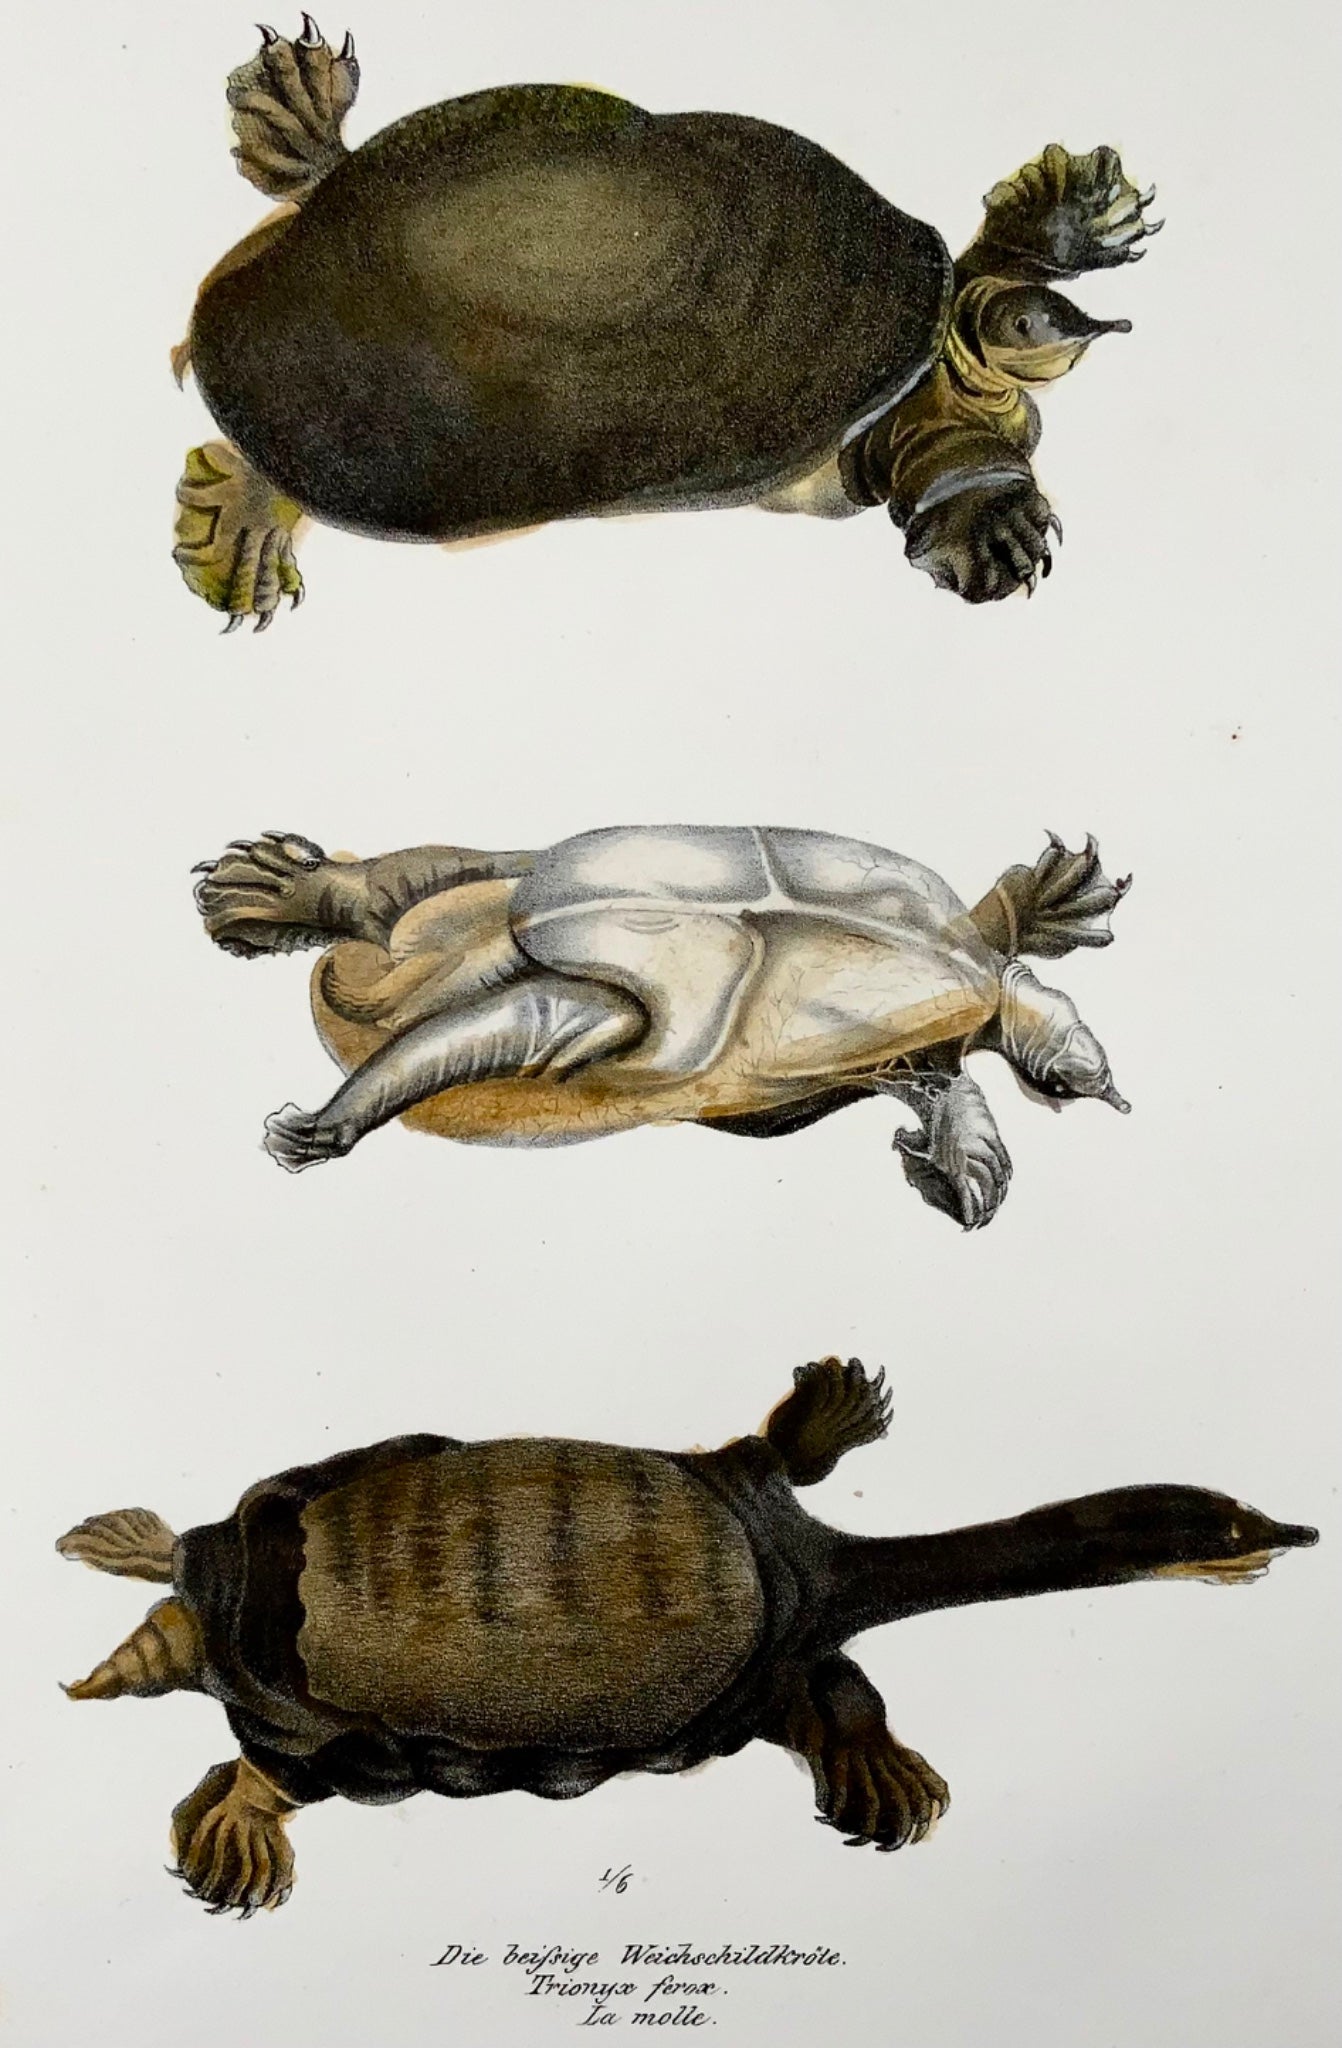 1833 Tortue molle de Floride, amphibiens, Schinz, lithographie colorée à la main